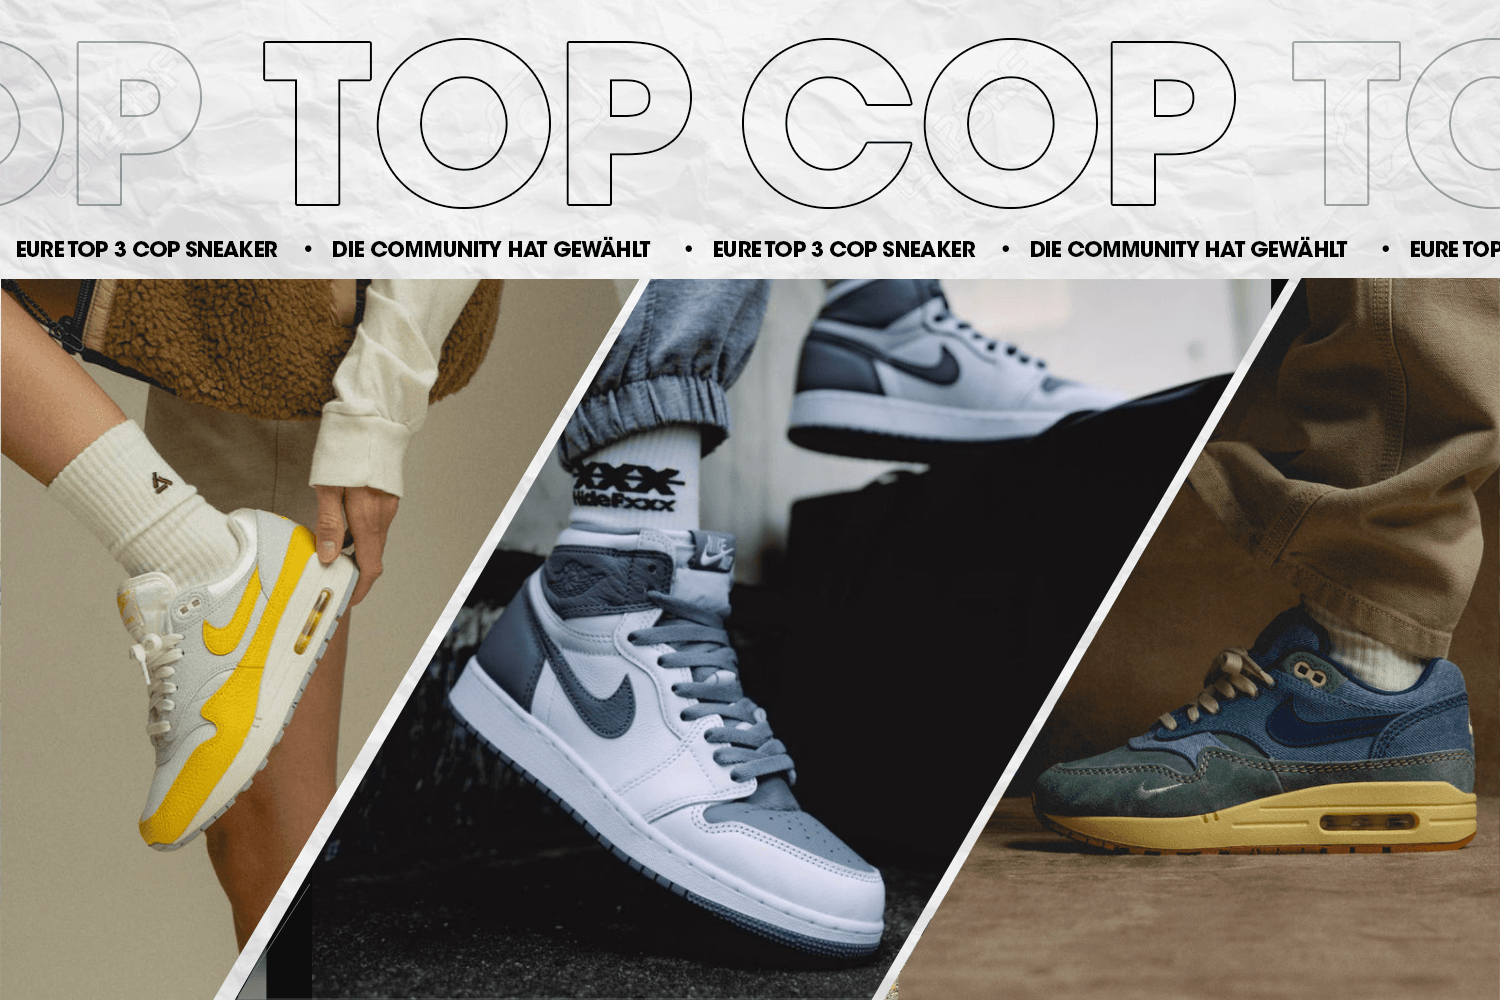 Die Community hat gewählt: Eure Top 3 Cop Sneaker Woche 34